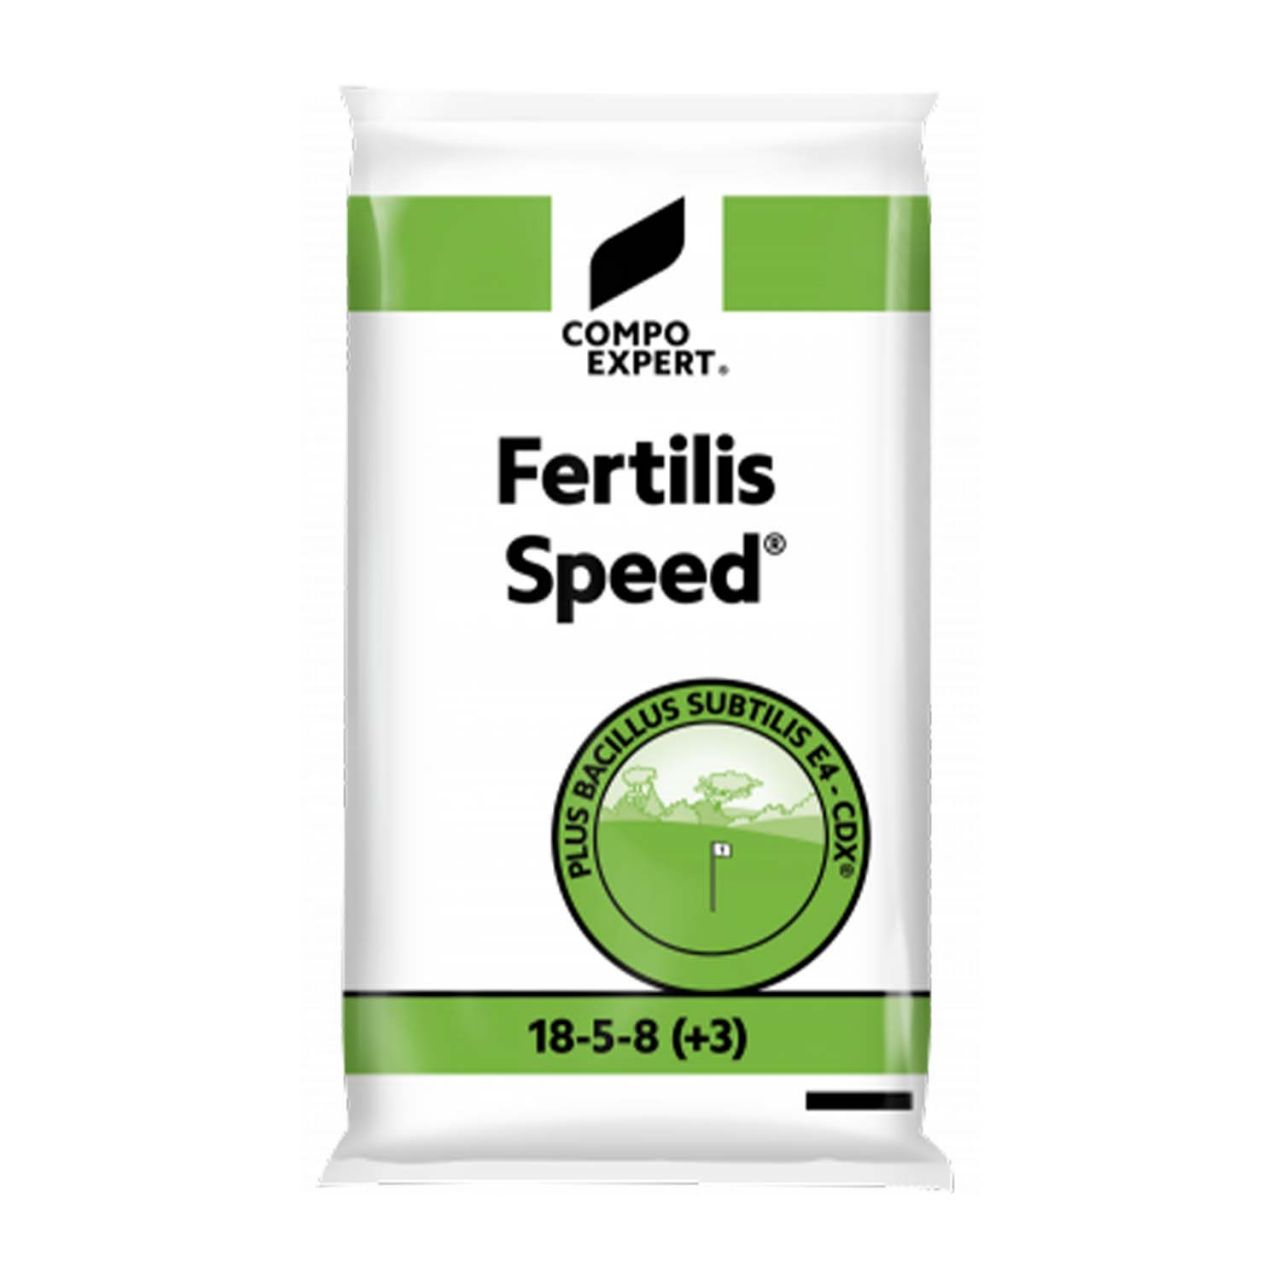 Kategorie <b>Produkt nicht gewünscht </b> - Frühjahrs- & Sommer-Rasenvolldünger - Compo Expert® Fertilis Speed®... - 